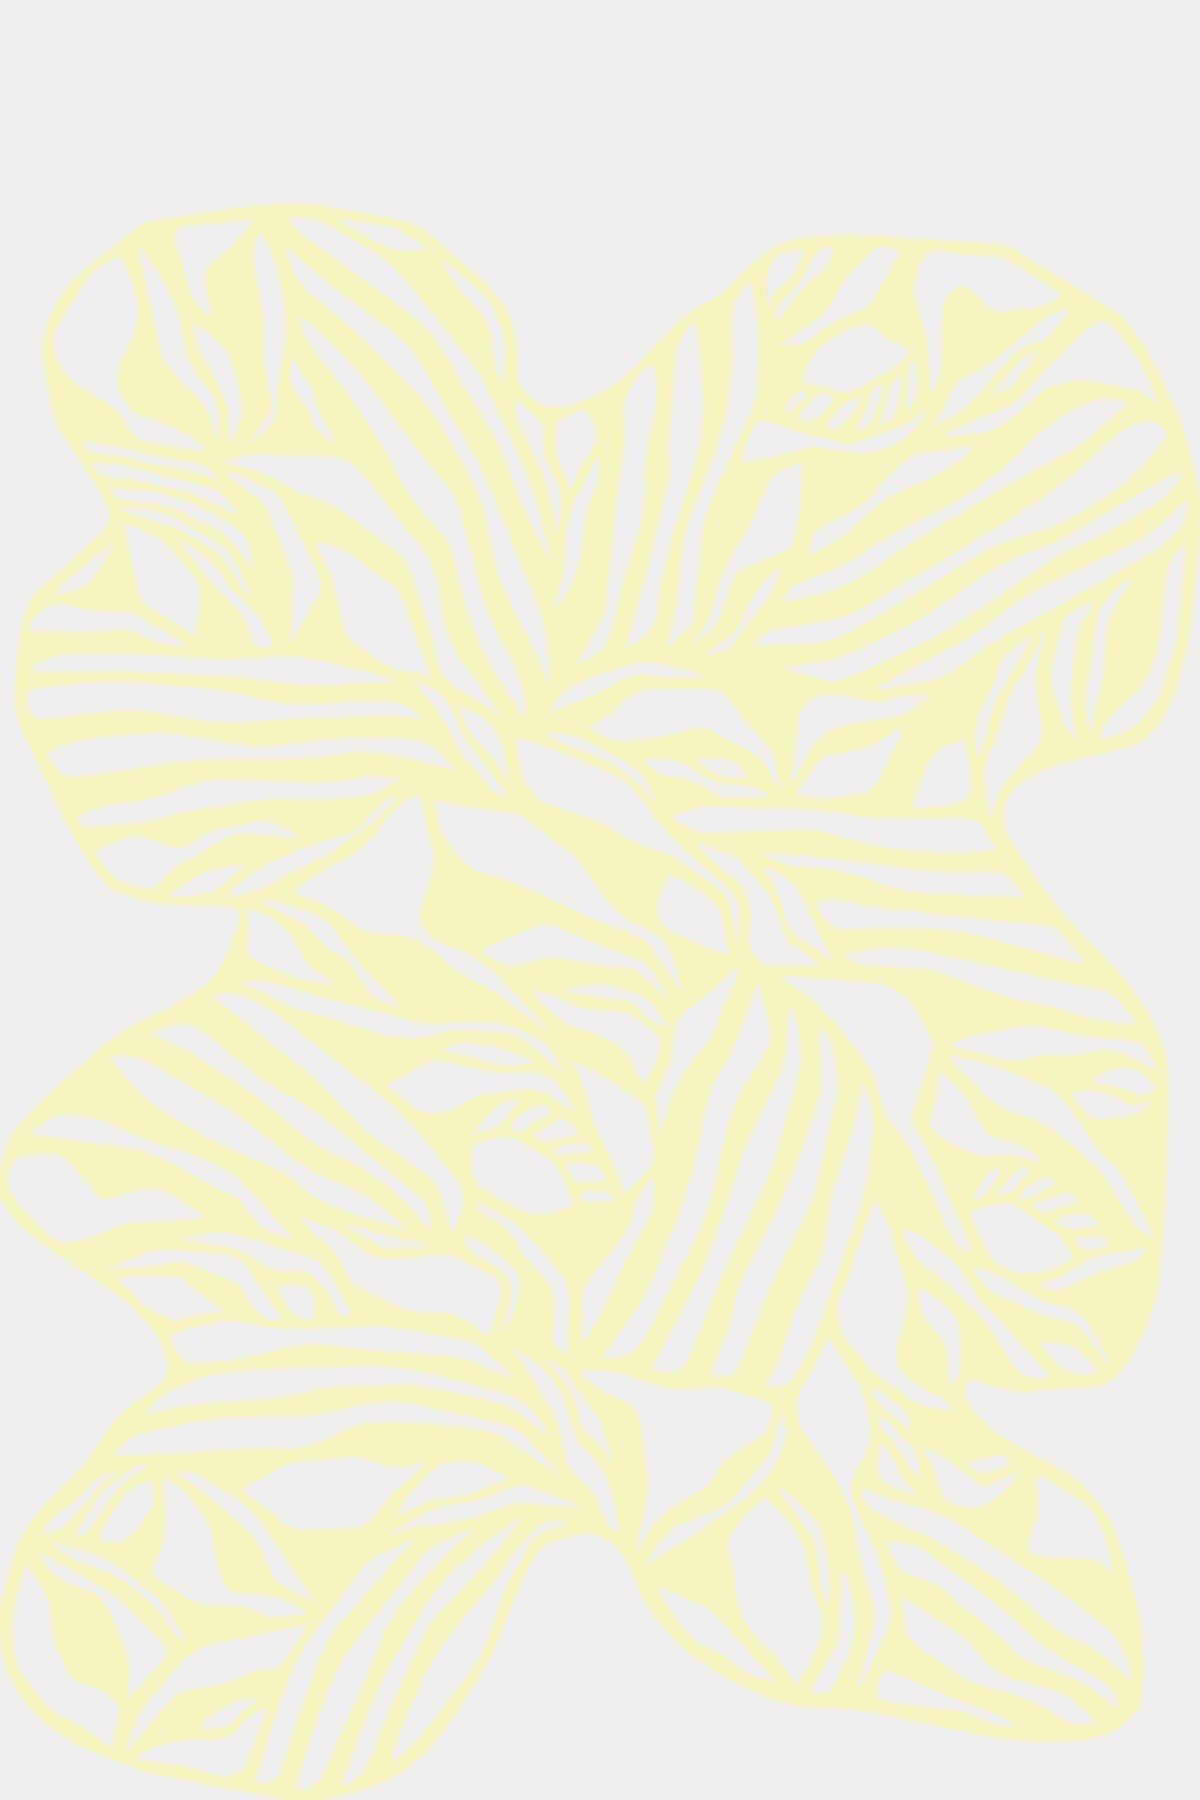 Studio About Papercut A4 Organic Rectangle, Yellow